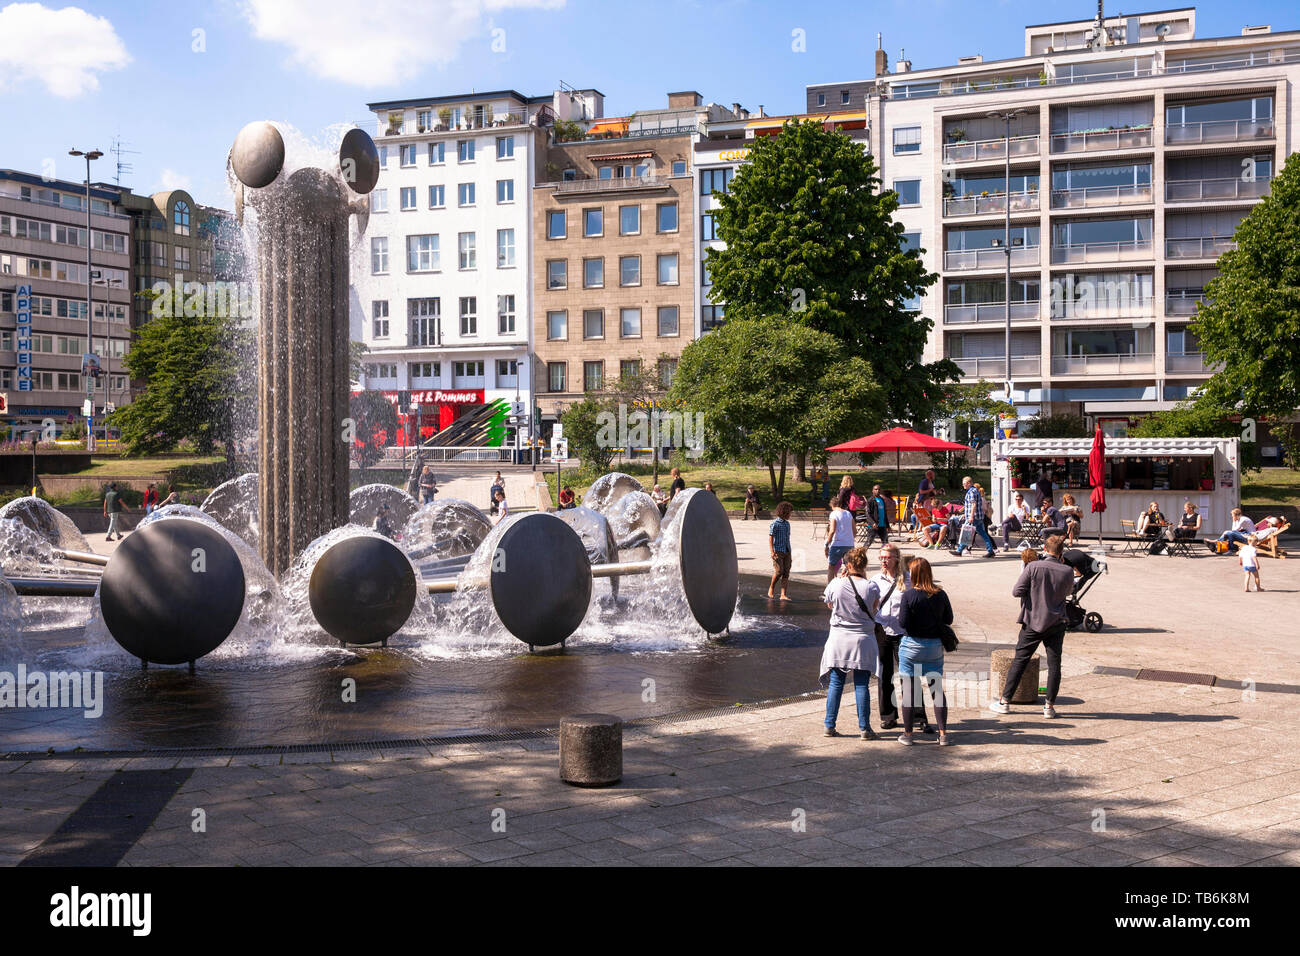 the square Ebertplatz with the fountain by Wolfgang Goeddertz, Cologne, Germany.  der Ebertplatz mit dem Brunnen von Wolfgang Goeddertz, Koeln, Deutsc Stock Photo